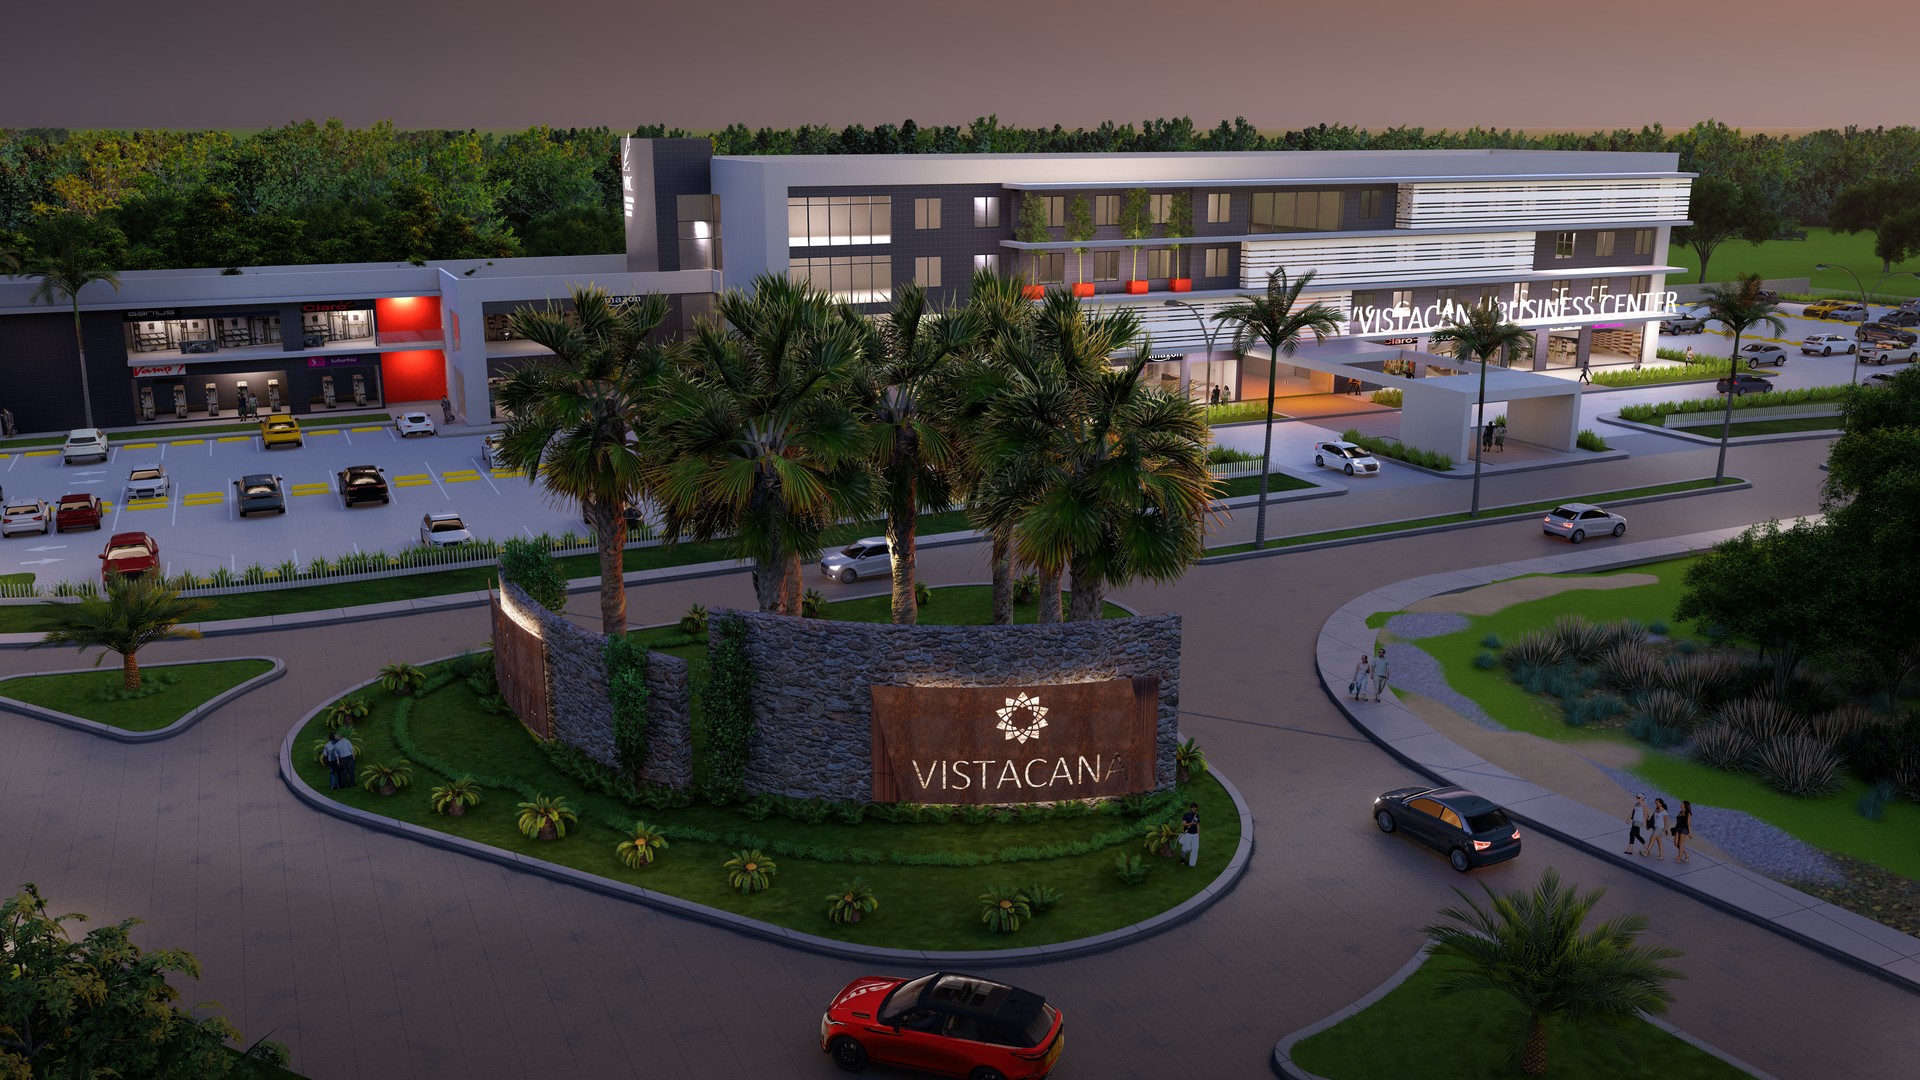 oficinas y locales comerciales - Venta de oficinas comerciales en Vista Cana 0